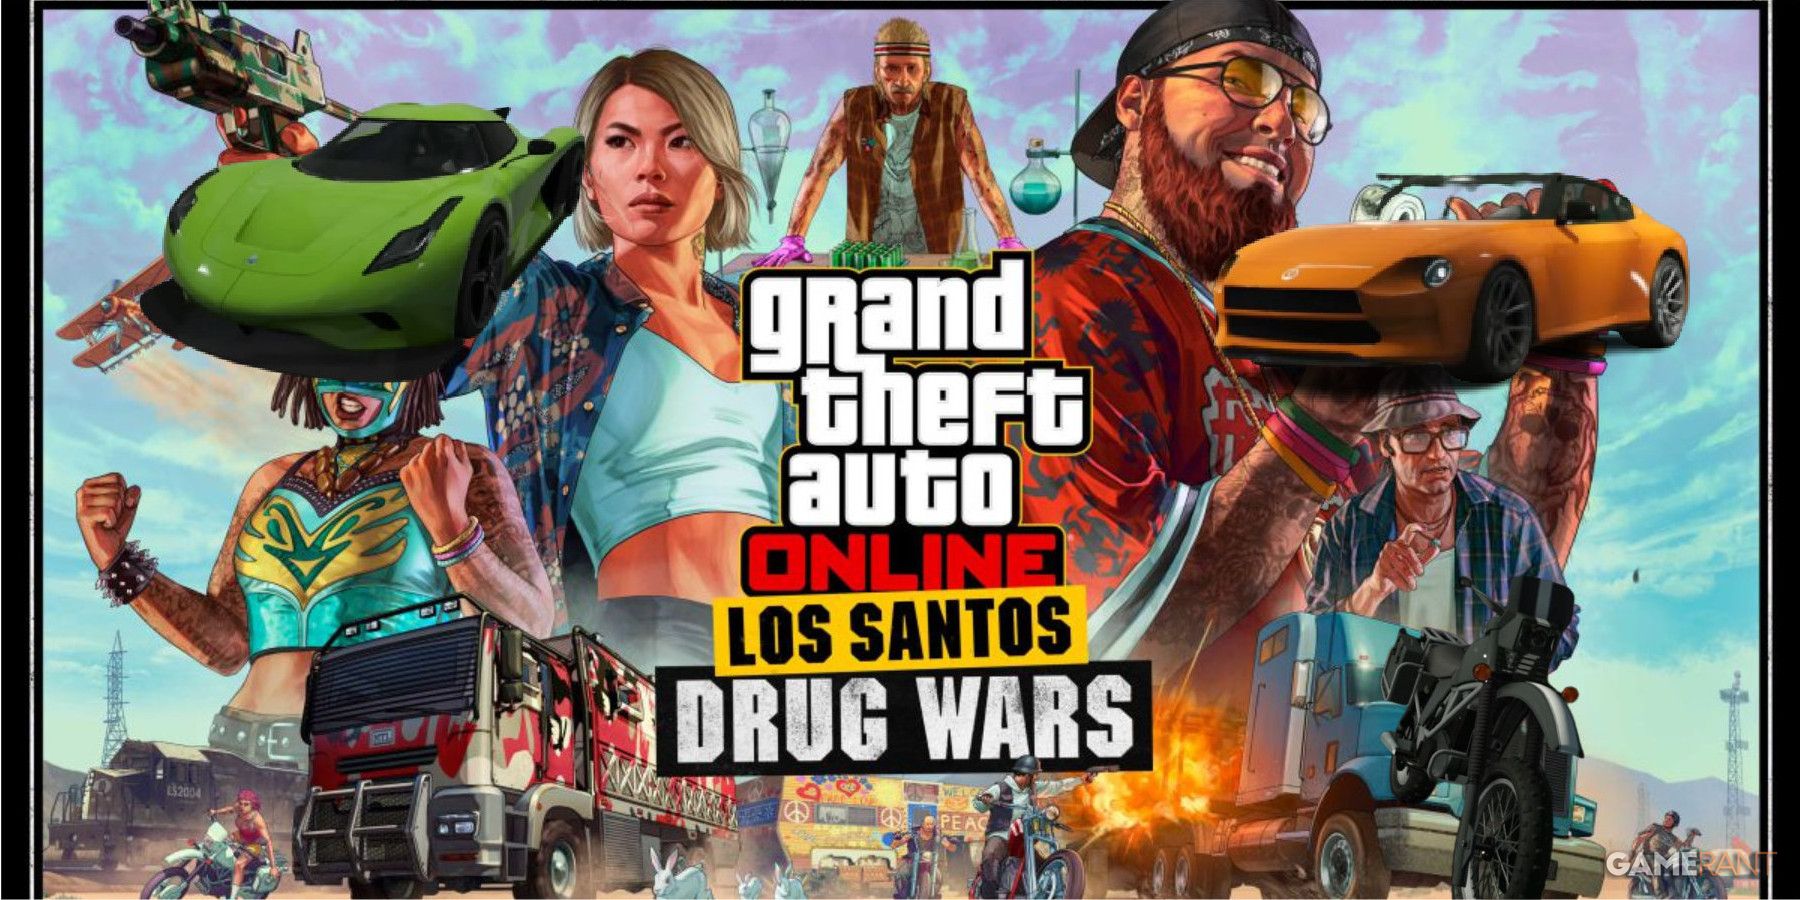 Los Santos Drug Wars: The Last Dose Out Now 